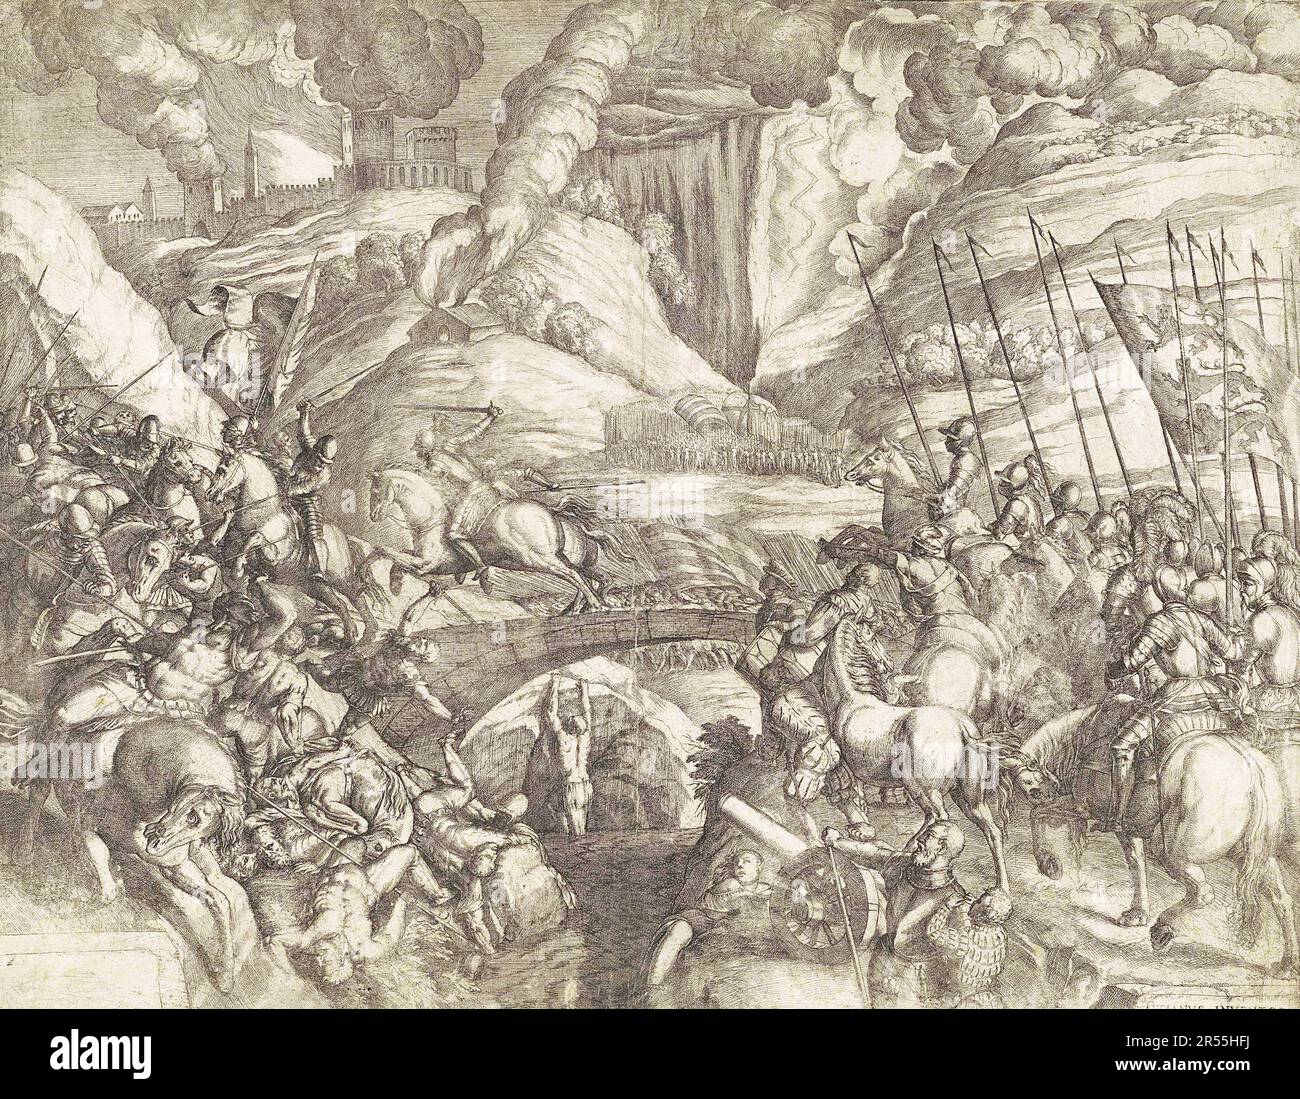 Die Schlacht von Cadore, auch bekannt als die Schlacht von Rio Secco oder Rusecco, war eine Schlacht, die in der Nähe von Pieve di Cadore während der Eröffnungsphase des Krieges der Liga von Cambrai, Teil der italienischen Kriege, am 2. März 1508 stattfand. Digital wiederhergestellte Reproduktion aus einem Original dieser Zeit / die Schlacht von Cadore, auch bekannt als die Schlacht von Rio Secco oder Rusecco, war eine Schlacht, die in der Nähe von Pieve di Cadore während der Eröffnungsphase des Krieges der Liga von Cambrai, einem Teil der Italienischen Kriege, 2. März 1508 stattfand, Historisch, digitales Restaurant Stockfoto